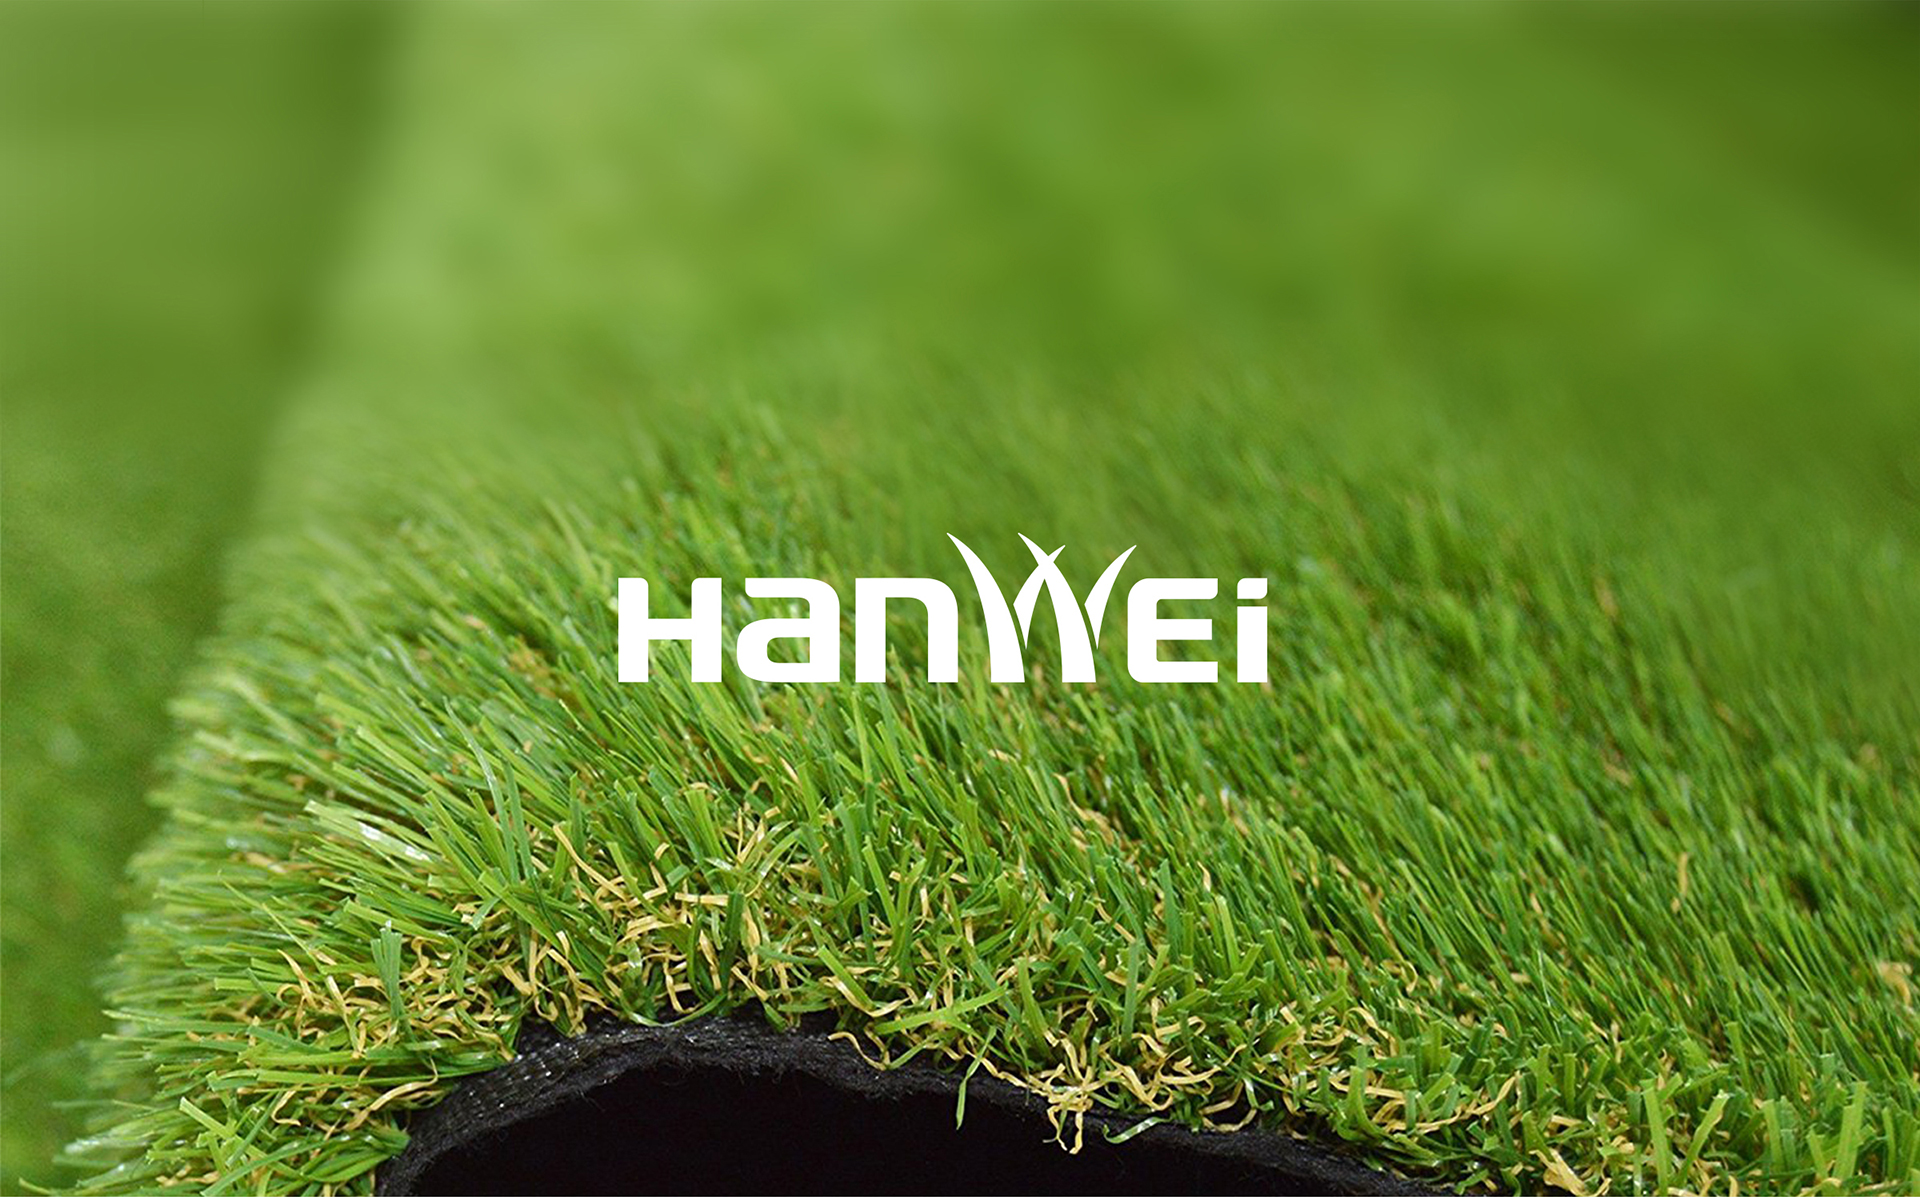 常州汉威人造草坪品牌全案策划设计网页设计